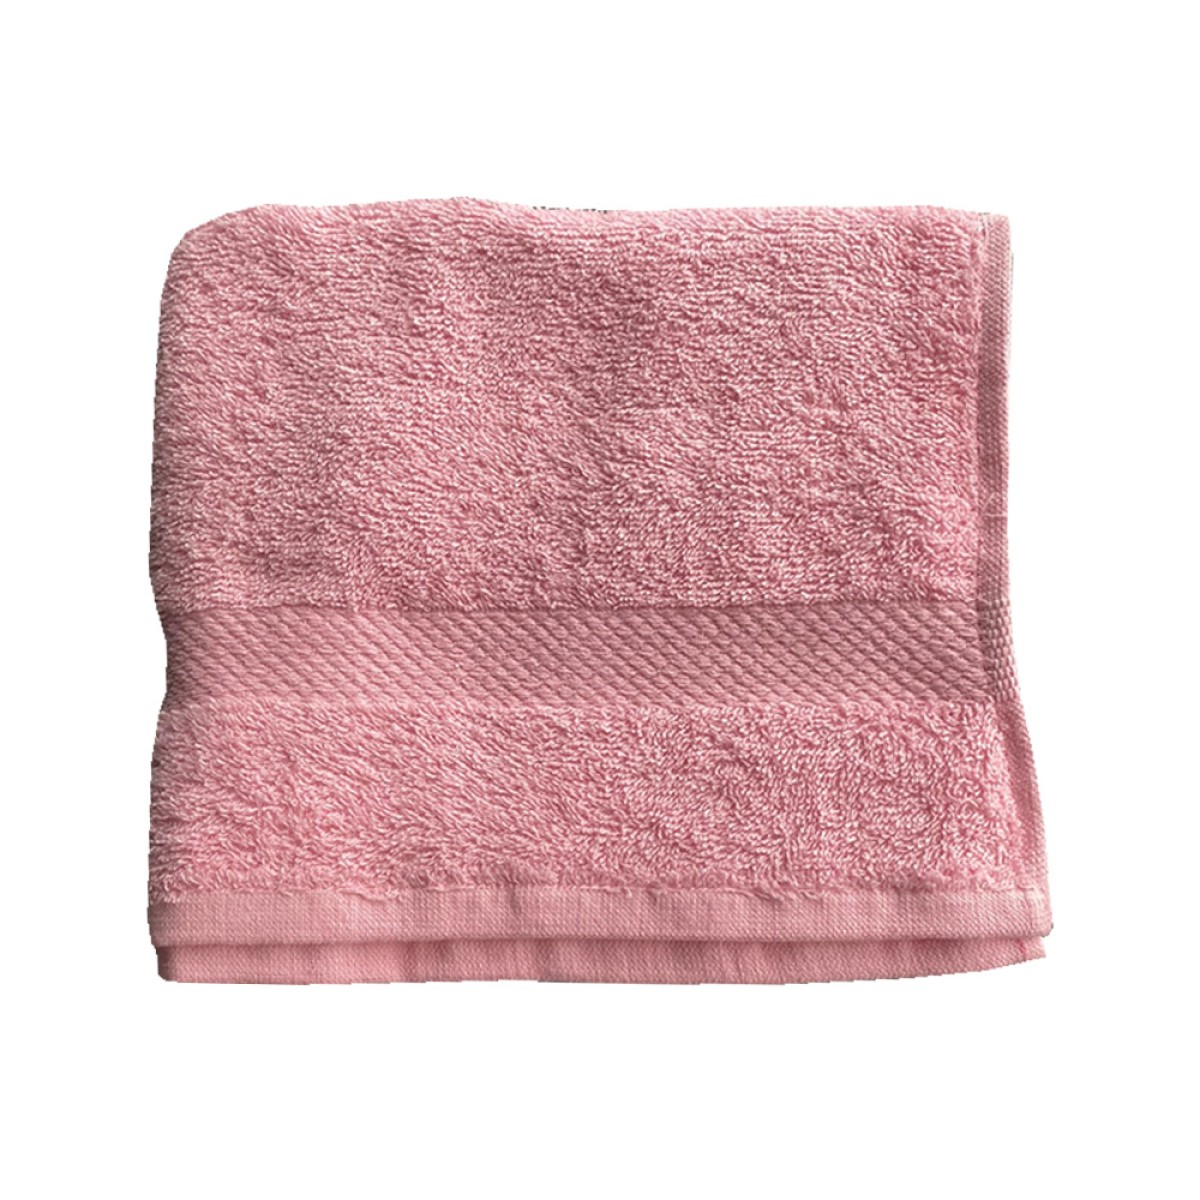 Πετσέτα Προσώπου 450grs (50x90) 100% Βαμβάκι με μπορντούρα με ανάγλυφο σχέδιο ροζ χρώμα Sidirela Toulip E-1765